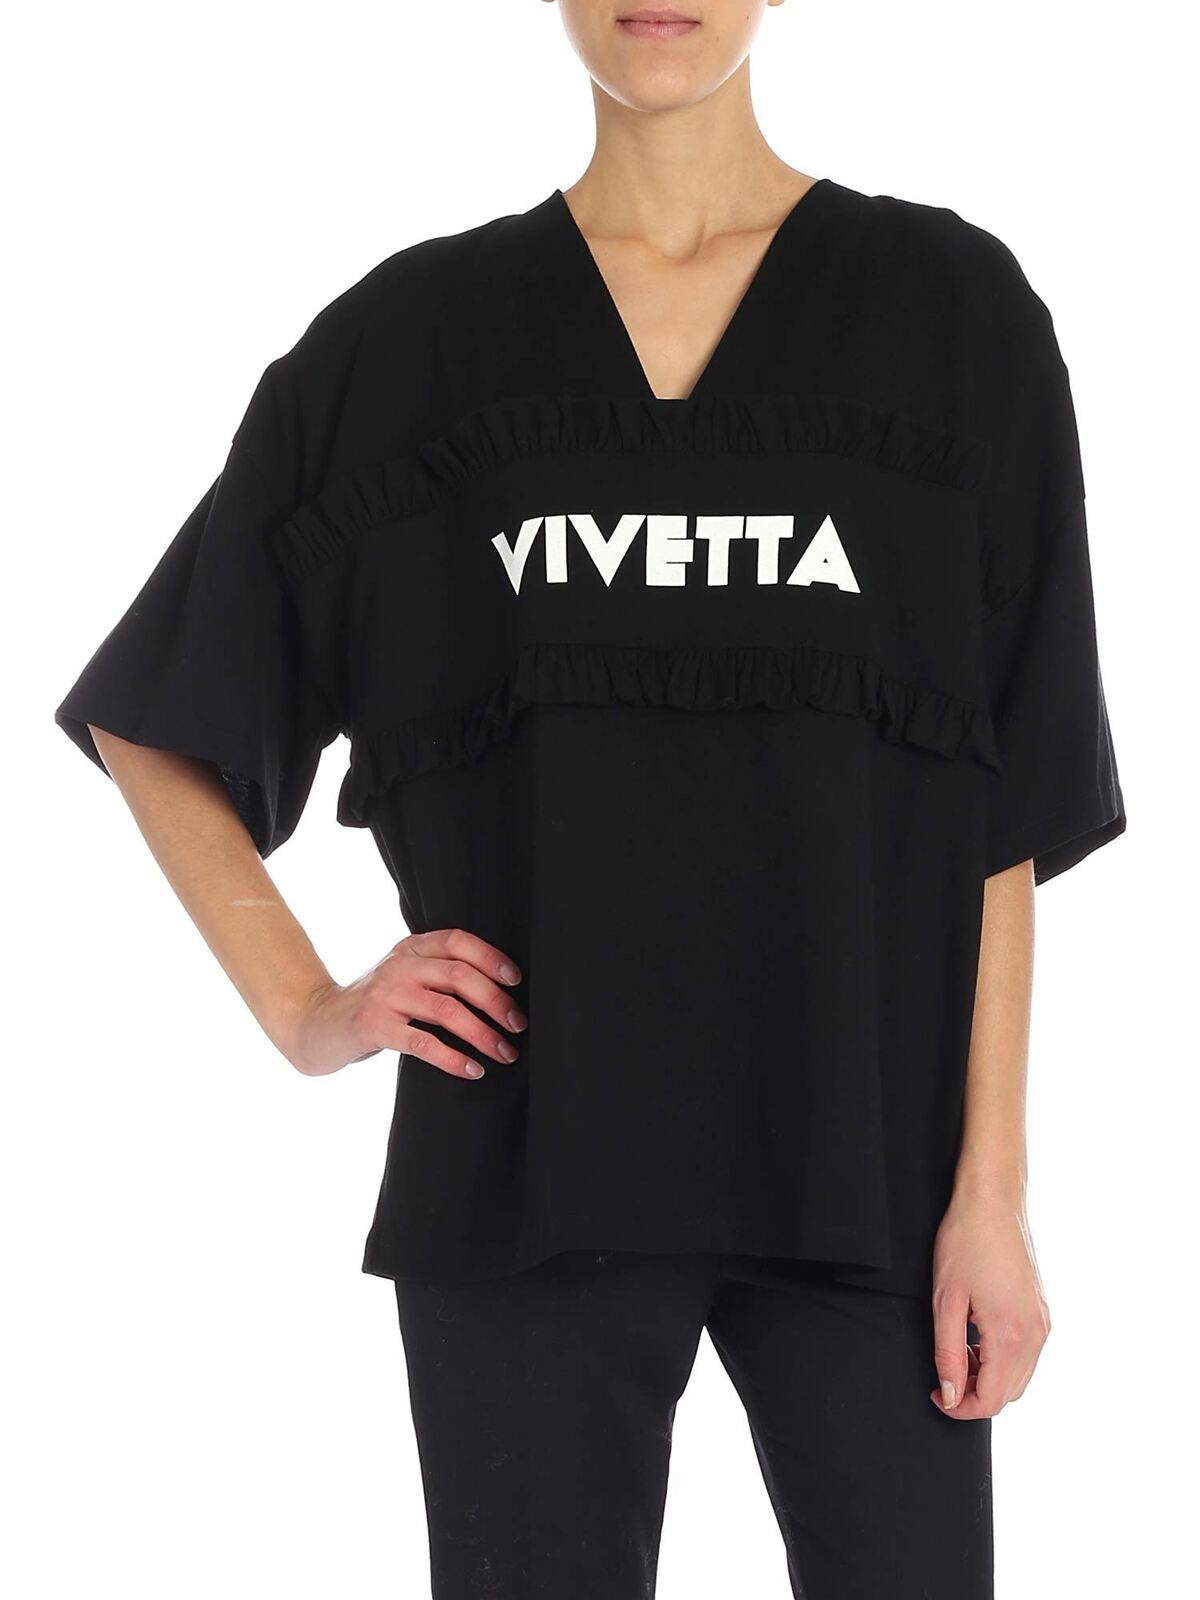 Vivetta "oudry" Black V-neck T-shirt